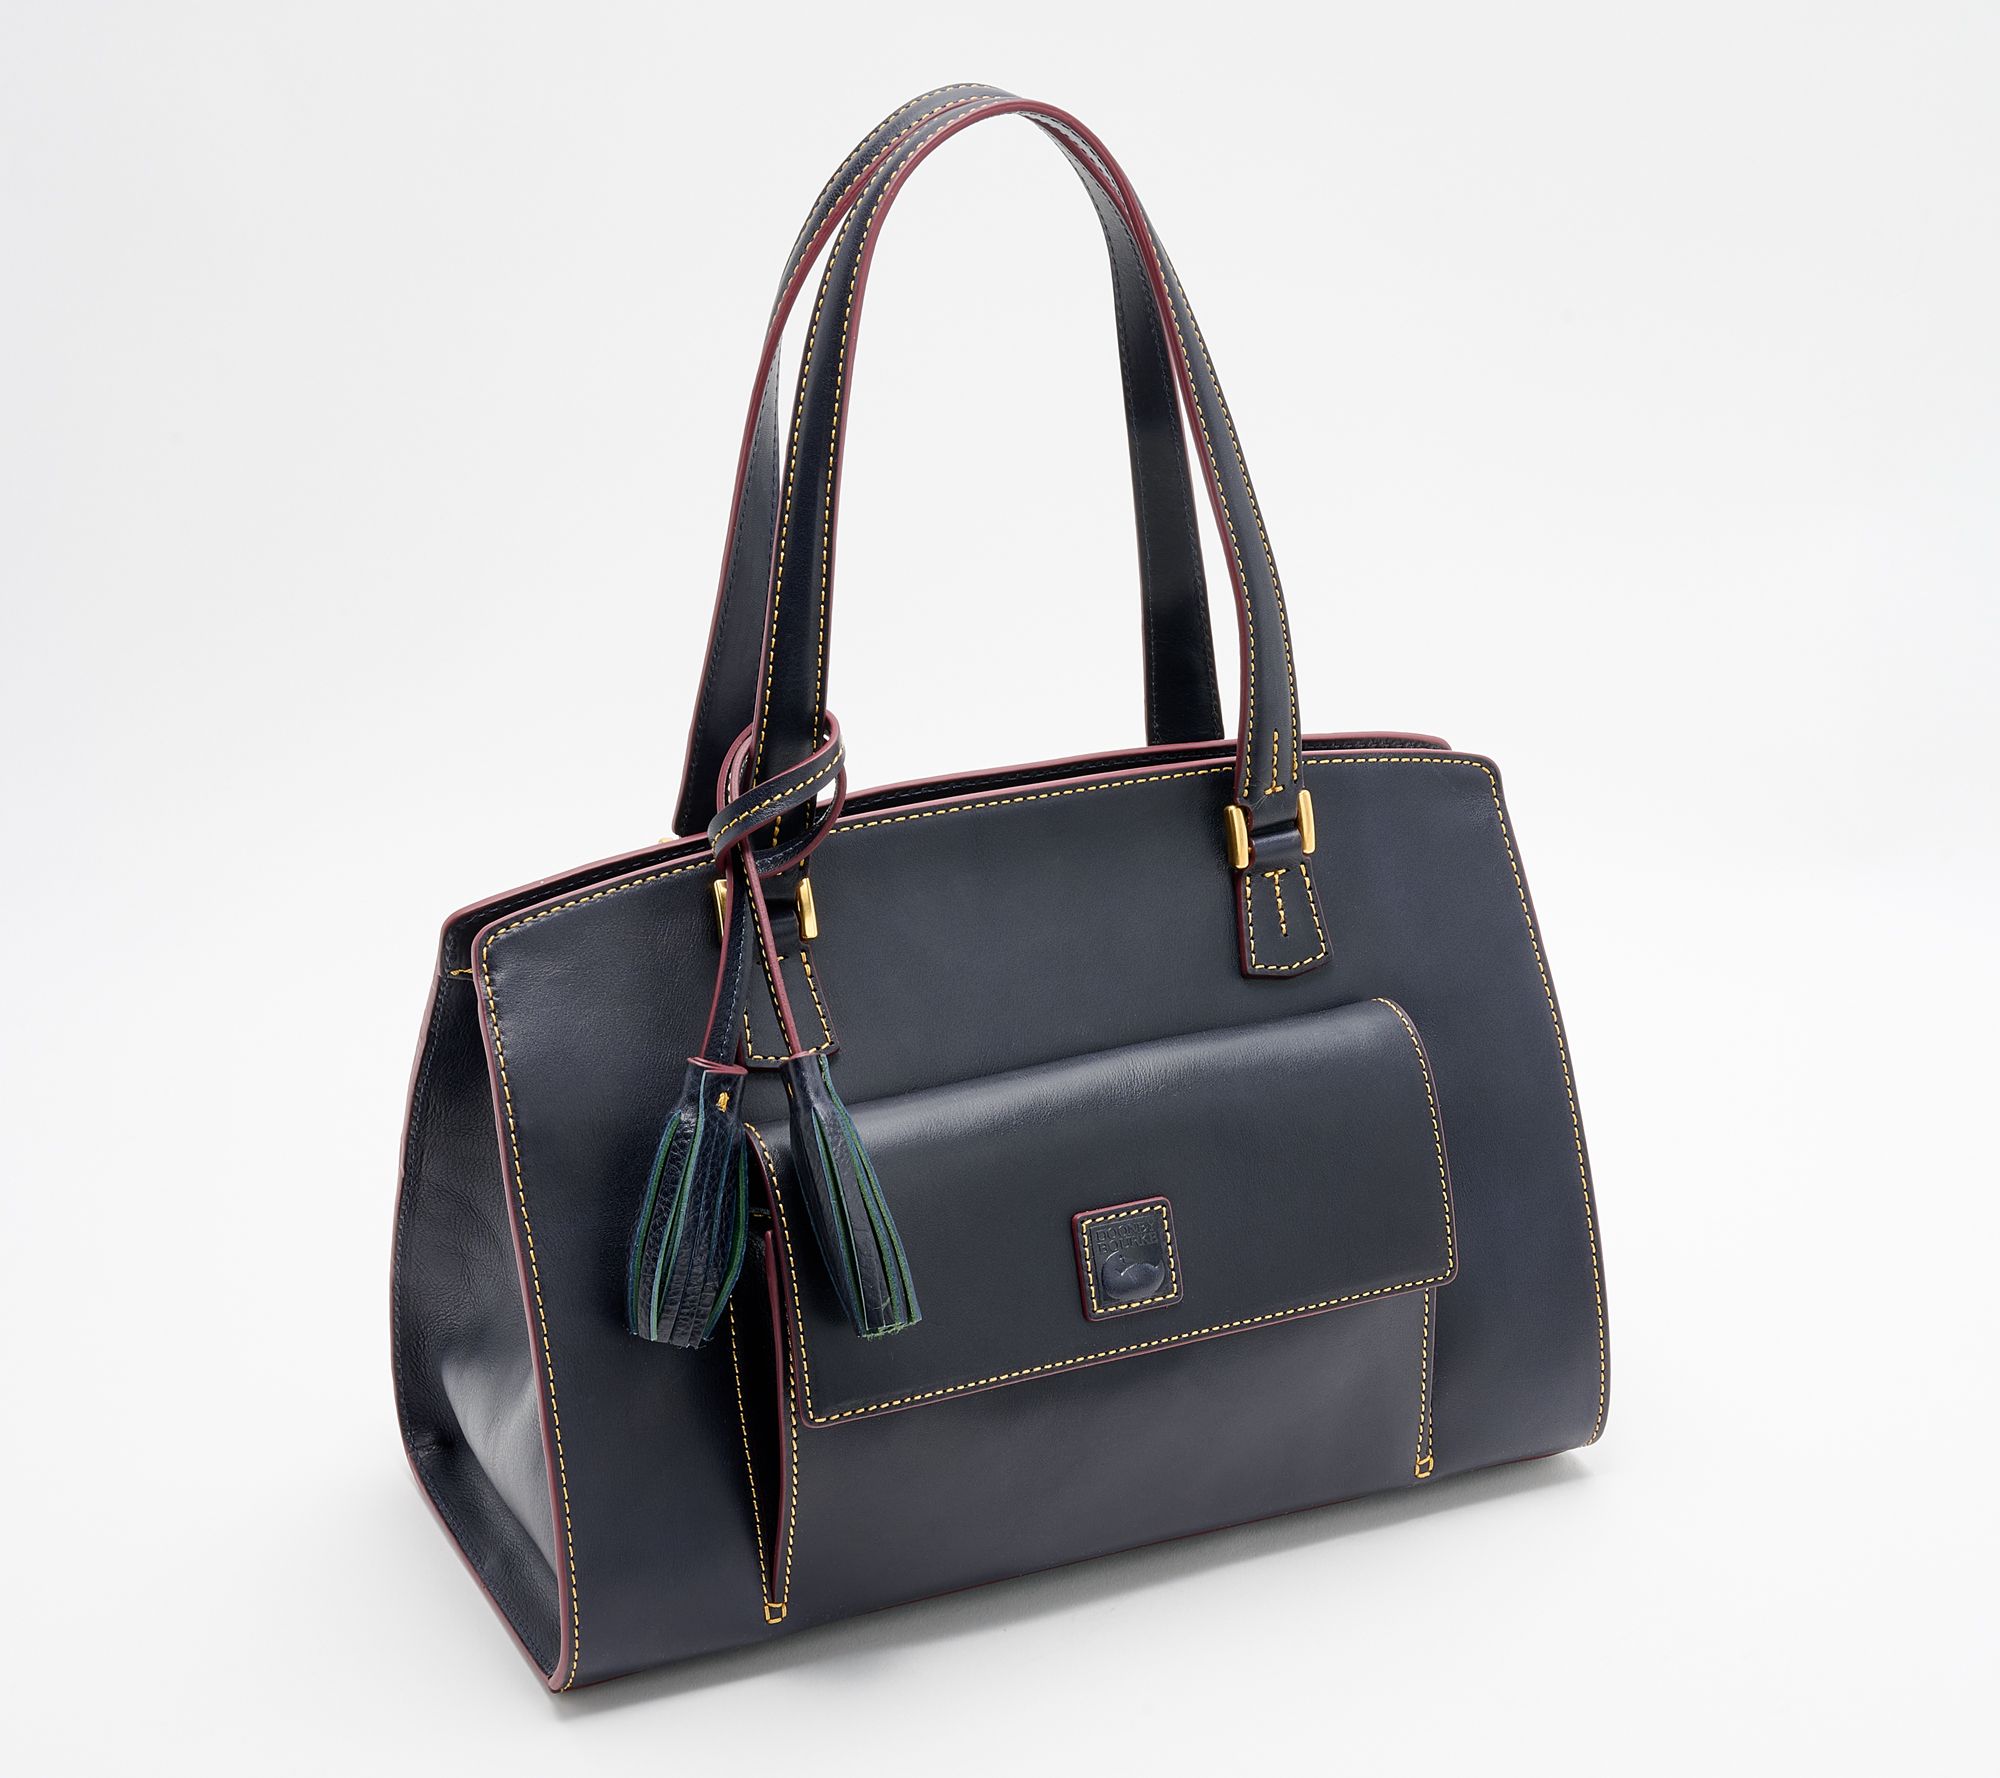 Dooney & Bourke Florentine Leather Choice of Shoulder Bag 